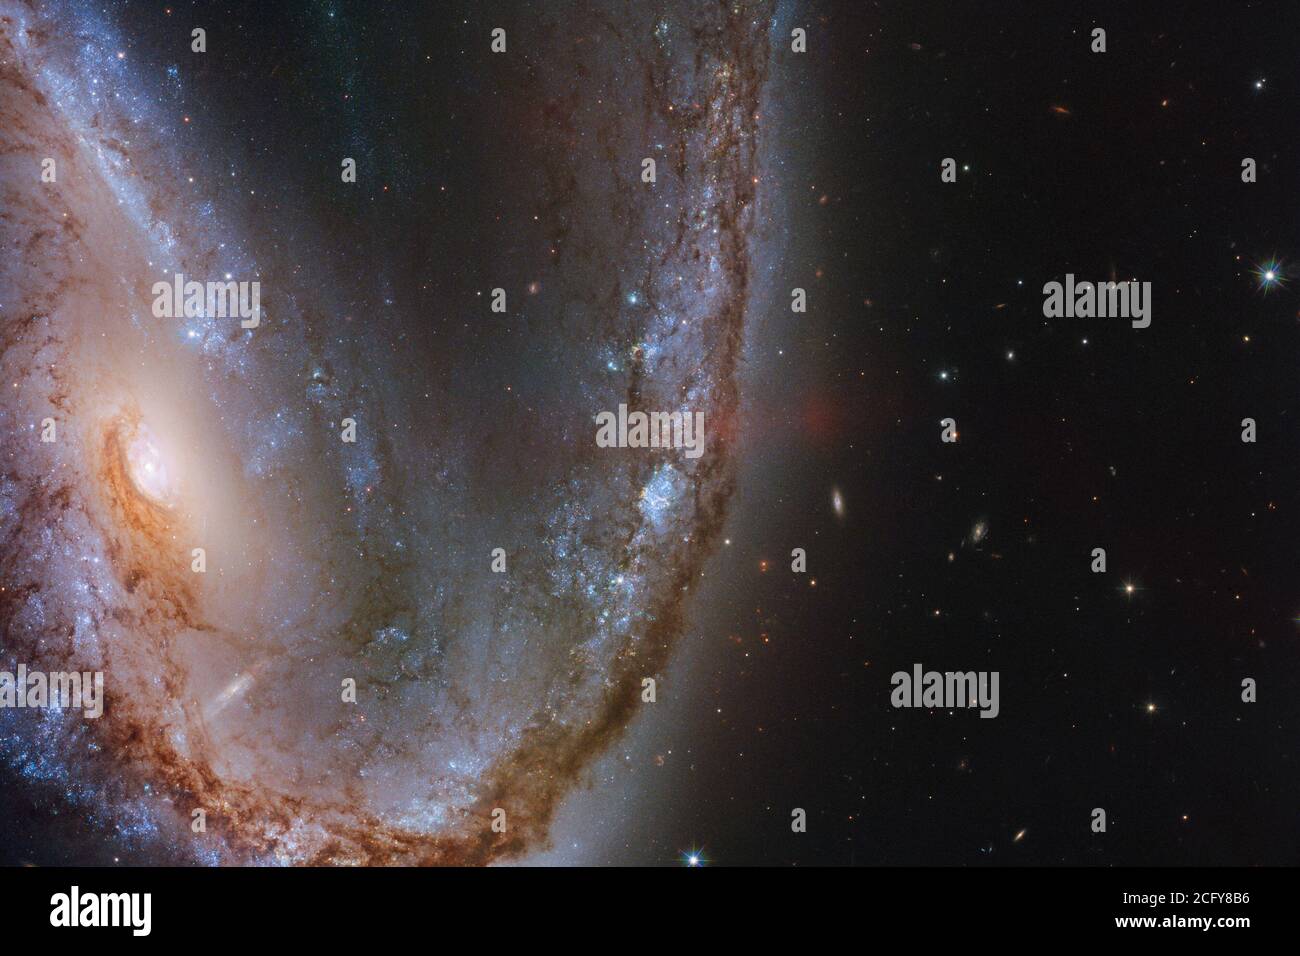 Questa immagine del telescopio spaziale NASA/ESA Hubble presenta la spettacolare galassia NGC 2442, soprannominata la galassia Meathook per la sua forma straordinariamente asimmetrica e irregolare. Questa galassia ospitò un'esplosione di supernova avvistata nel marzo 2015, conosciuta come SN 2015F, creata da una stella nana bianca. Il nano bianco faceva parte di un sistema di stelle binarie e sifonava massa dal suo compagno, diventando alla fine troppo avido e assumendo più di quanto potesse gestire. Questo ha sbilanciato la stella e innescato una fusione nucleare scoraggiante che alla fine ha portato ad un'esplosione di supernova intensamente violenta. NASA/ESA Foto Stock